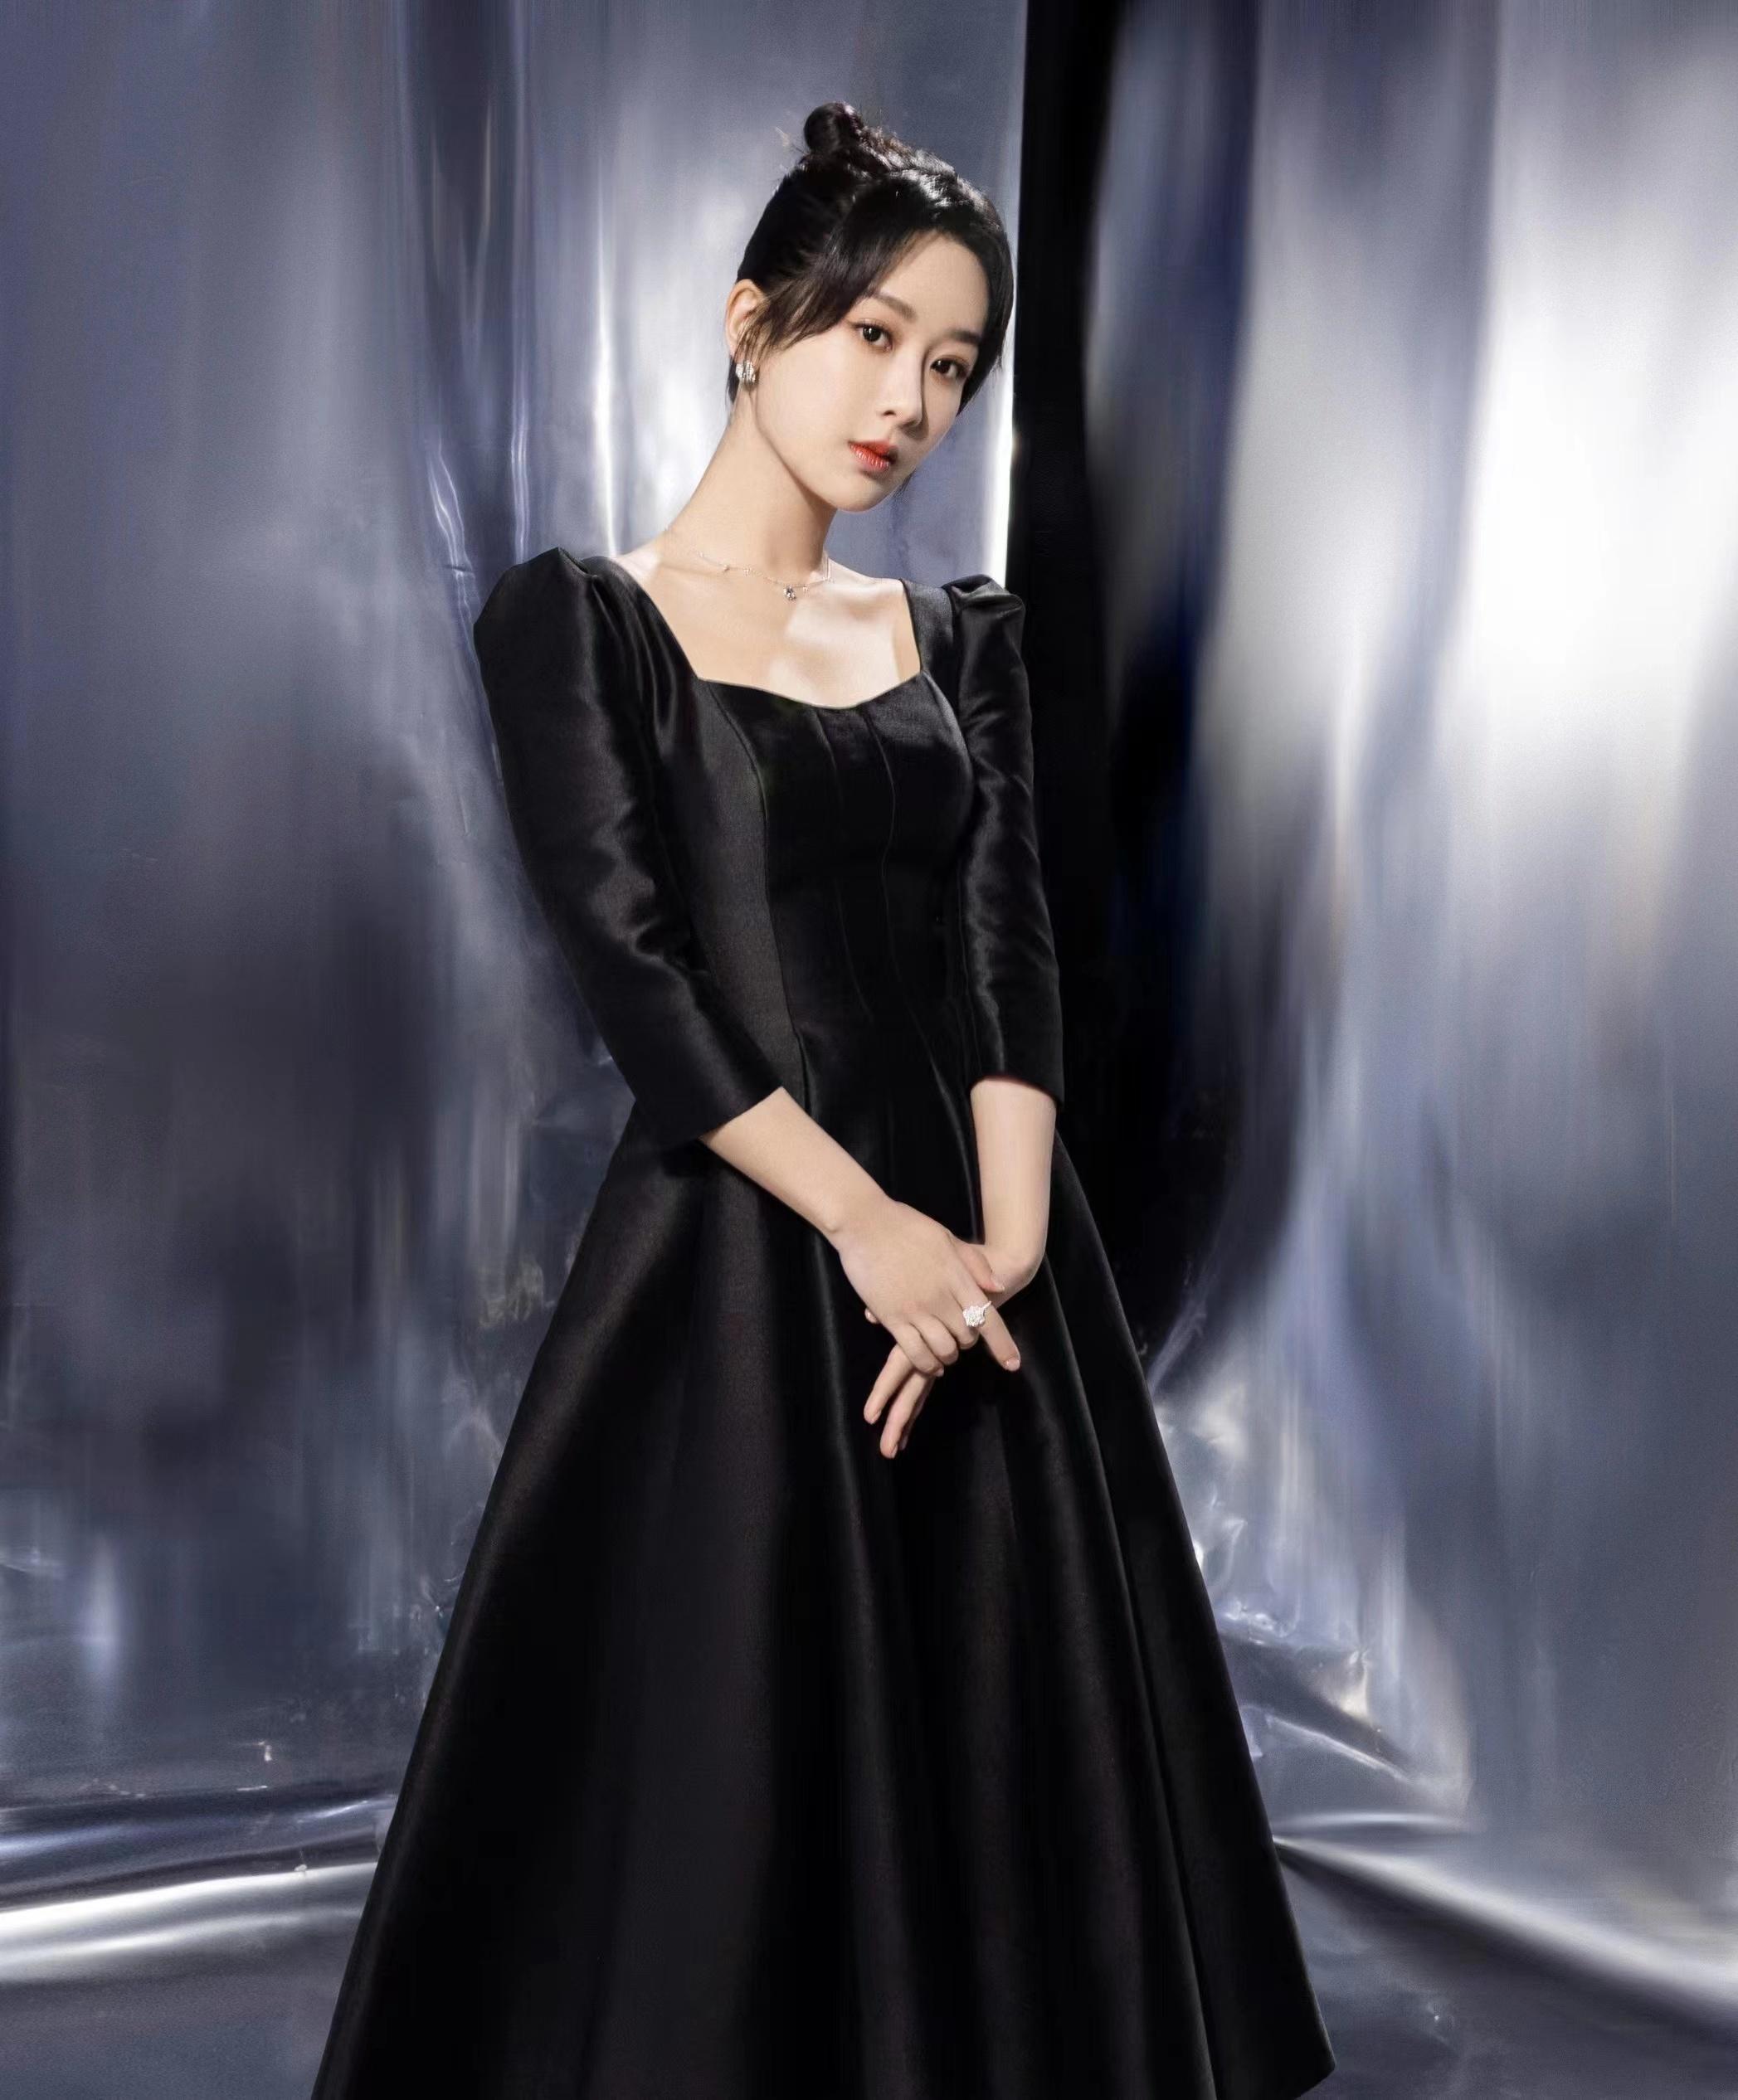 杨紫微博之夜内场造 黑色连身礼服裙状态很不错,1 (1)